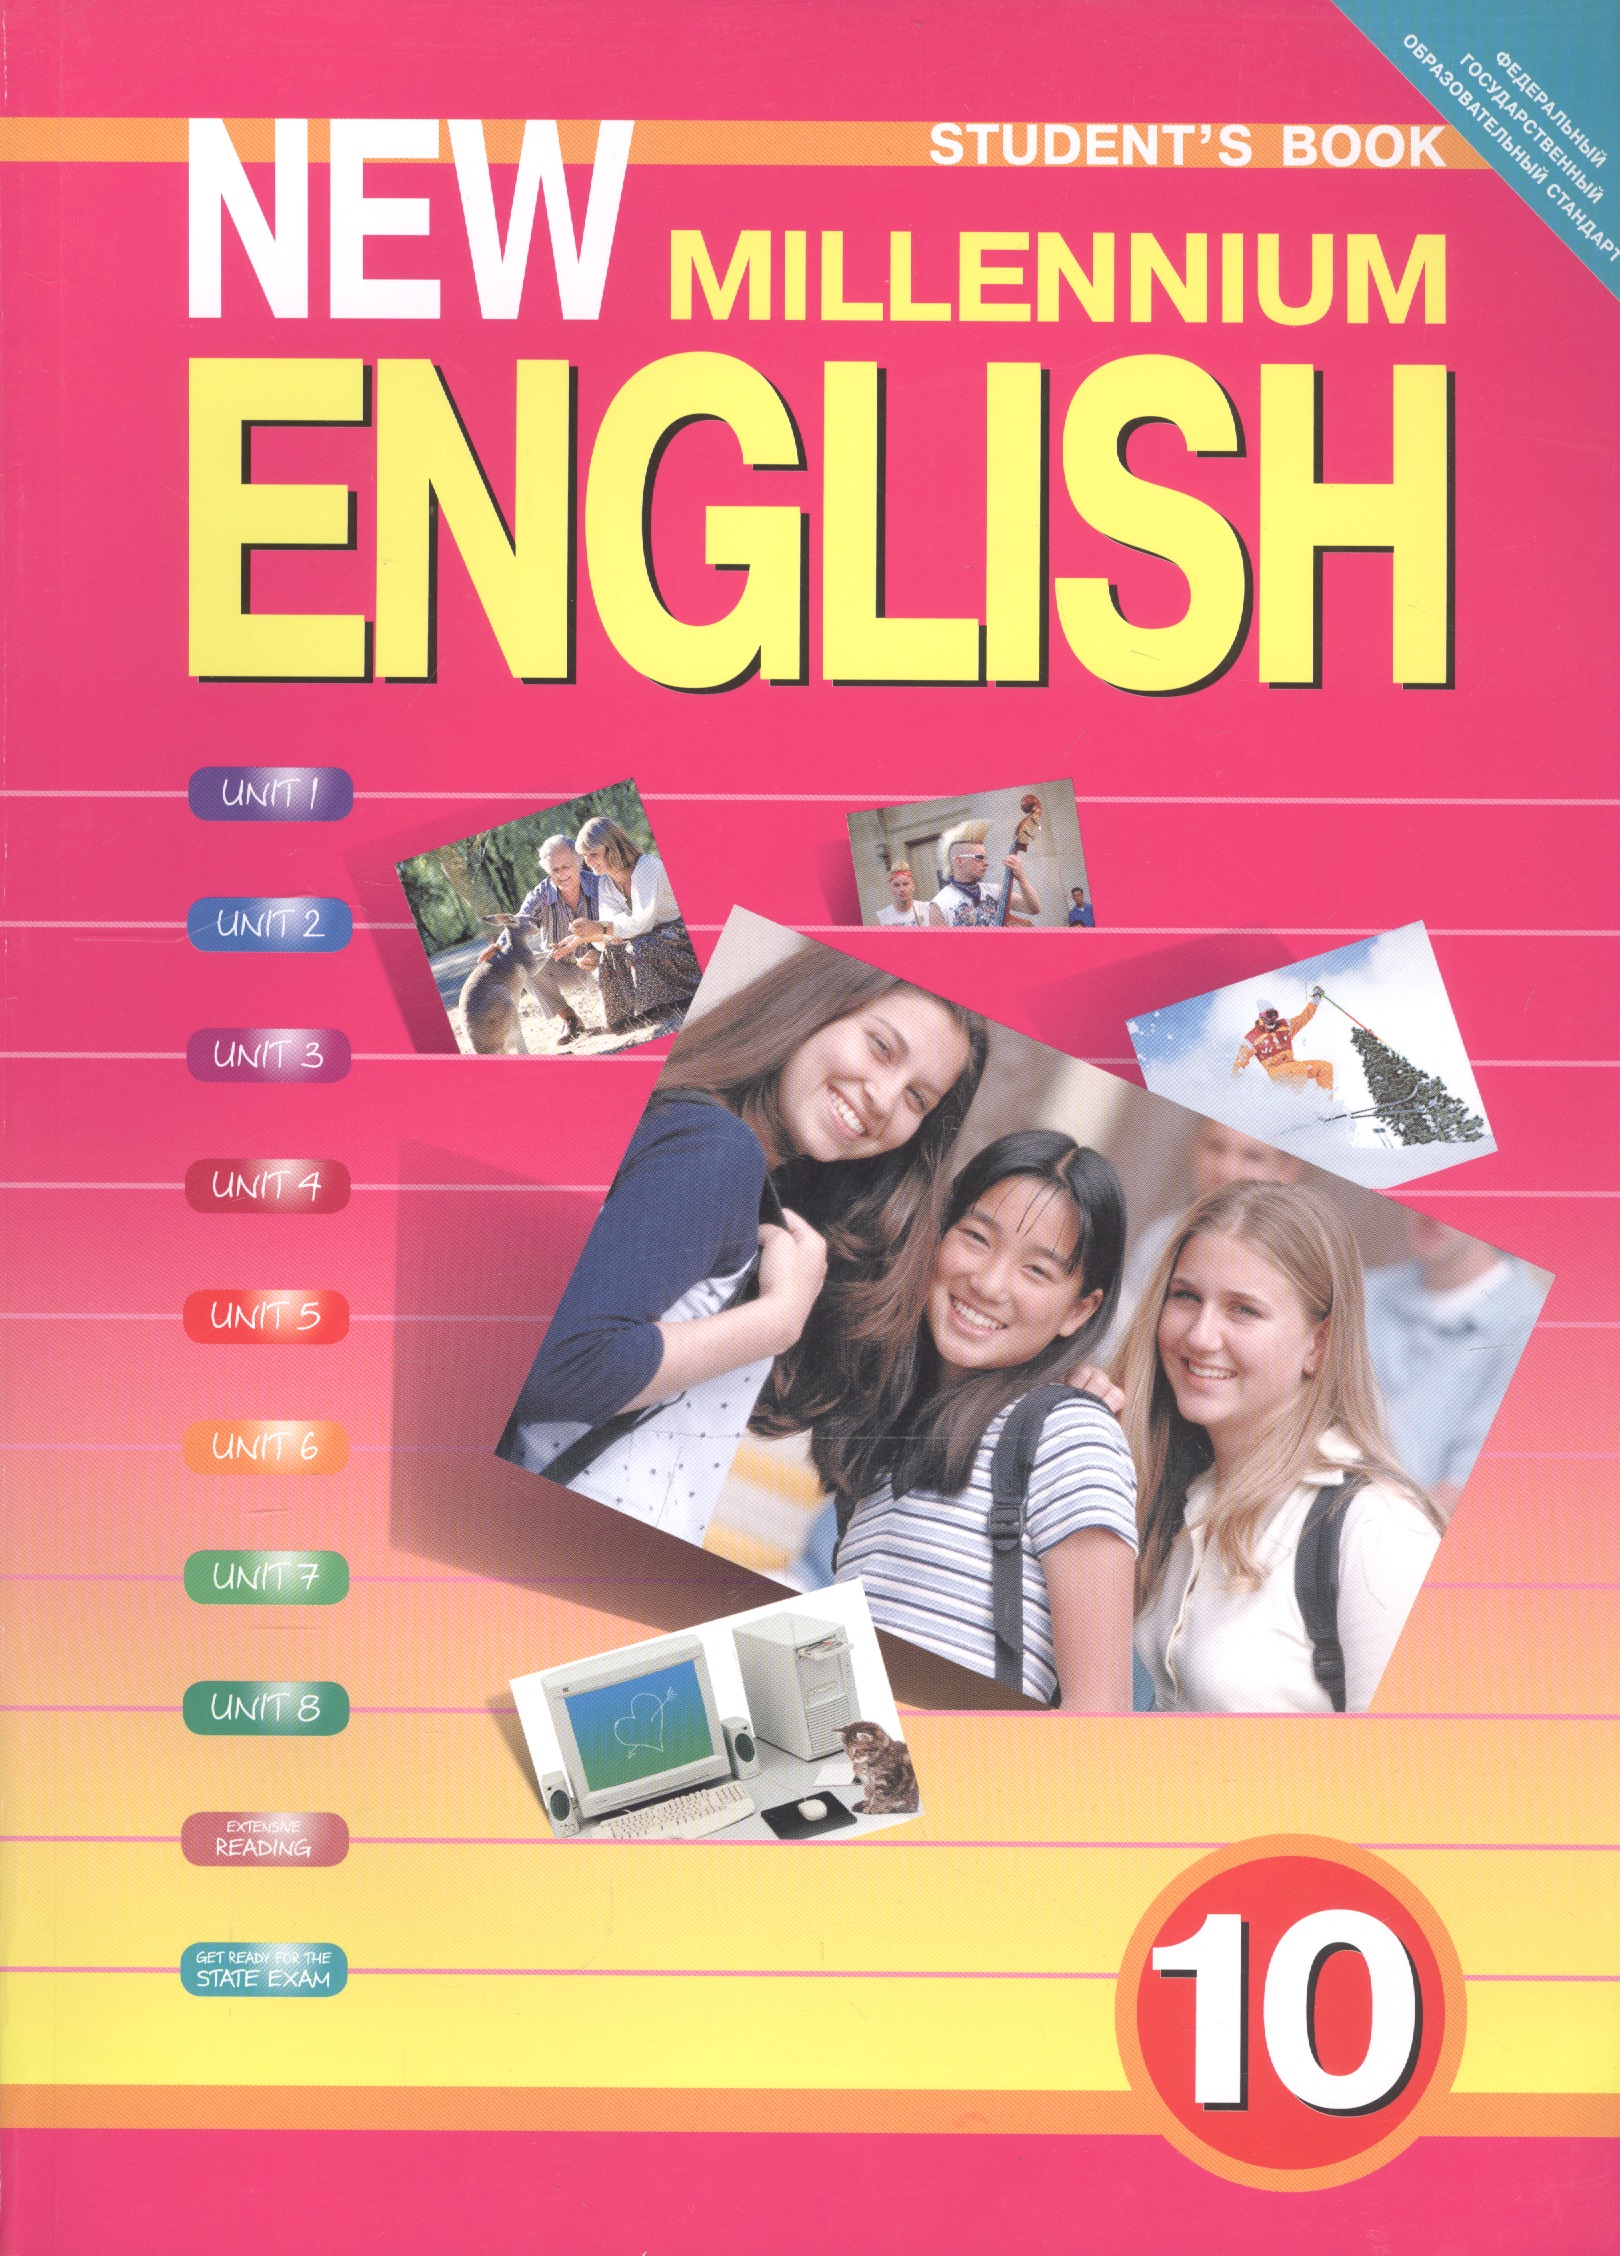 Skysmart английский 10 класс. Нью Миллениум учебник английского 10 класс. Английский язык. Учебник. Ученик англйского языка. Ученик на английском языке.